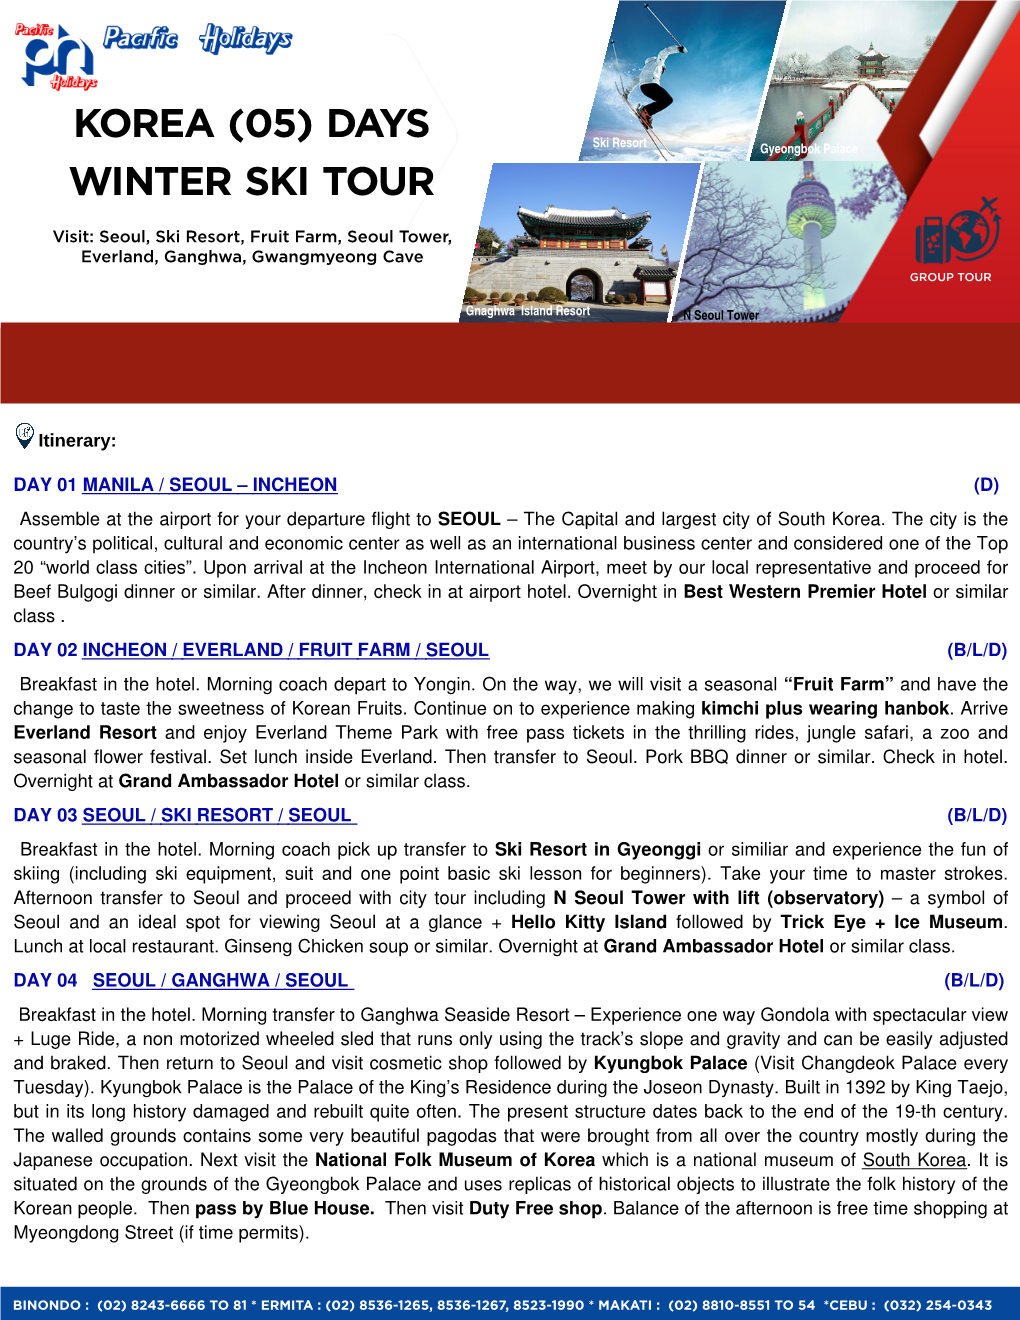 Korea (05) Days Winter Ski Tour